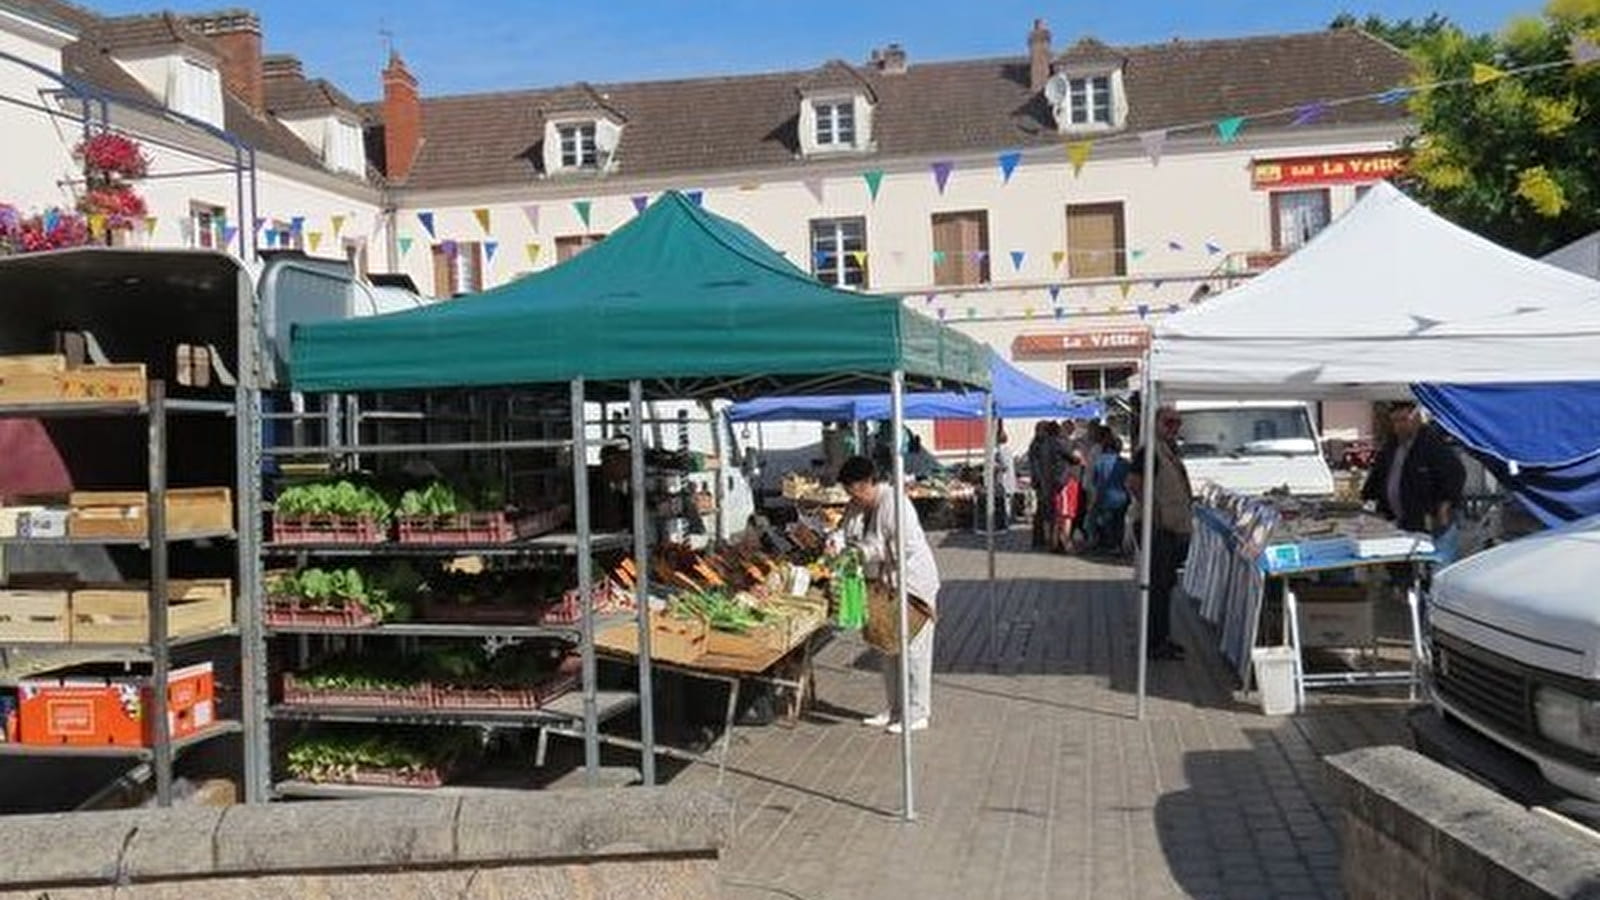 Wochenmarkt in Neuvy-sur-Loire